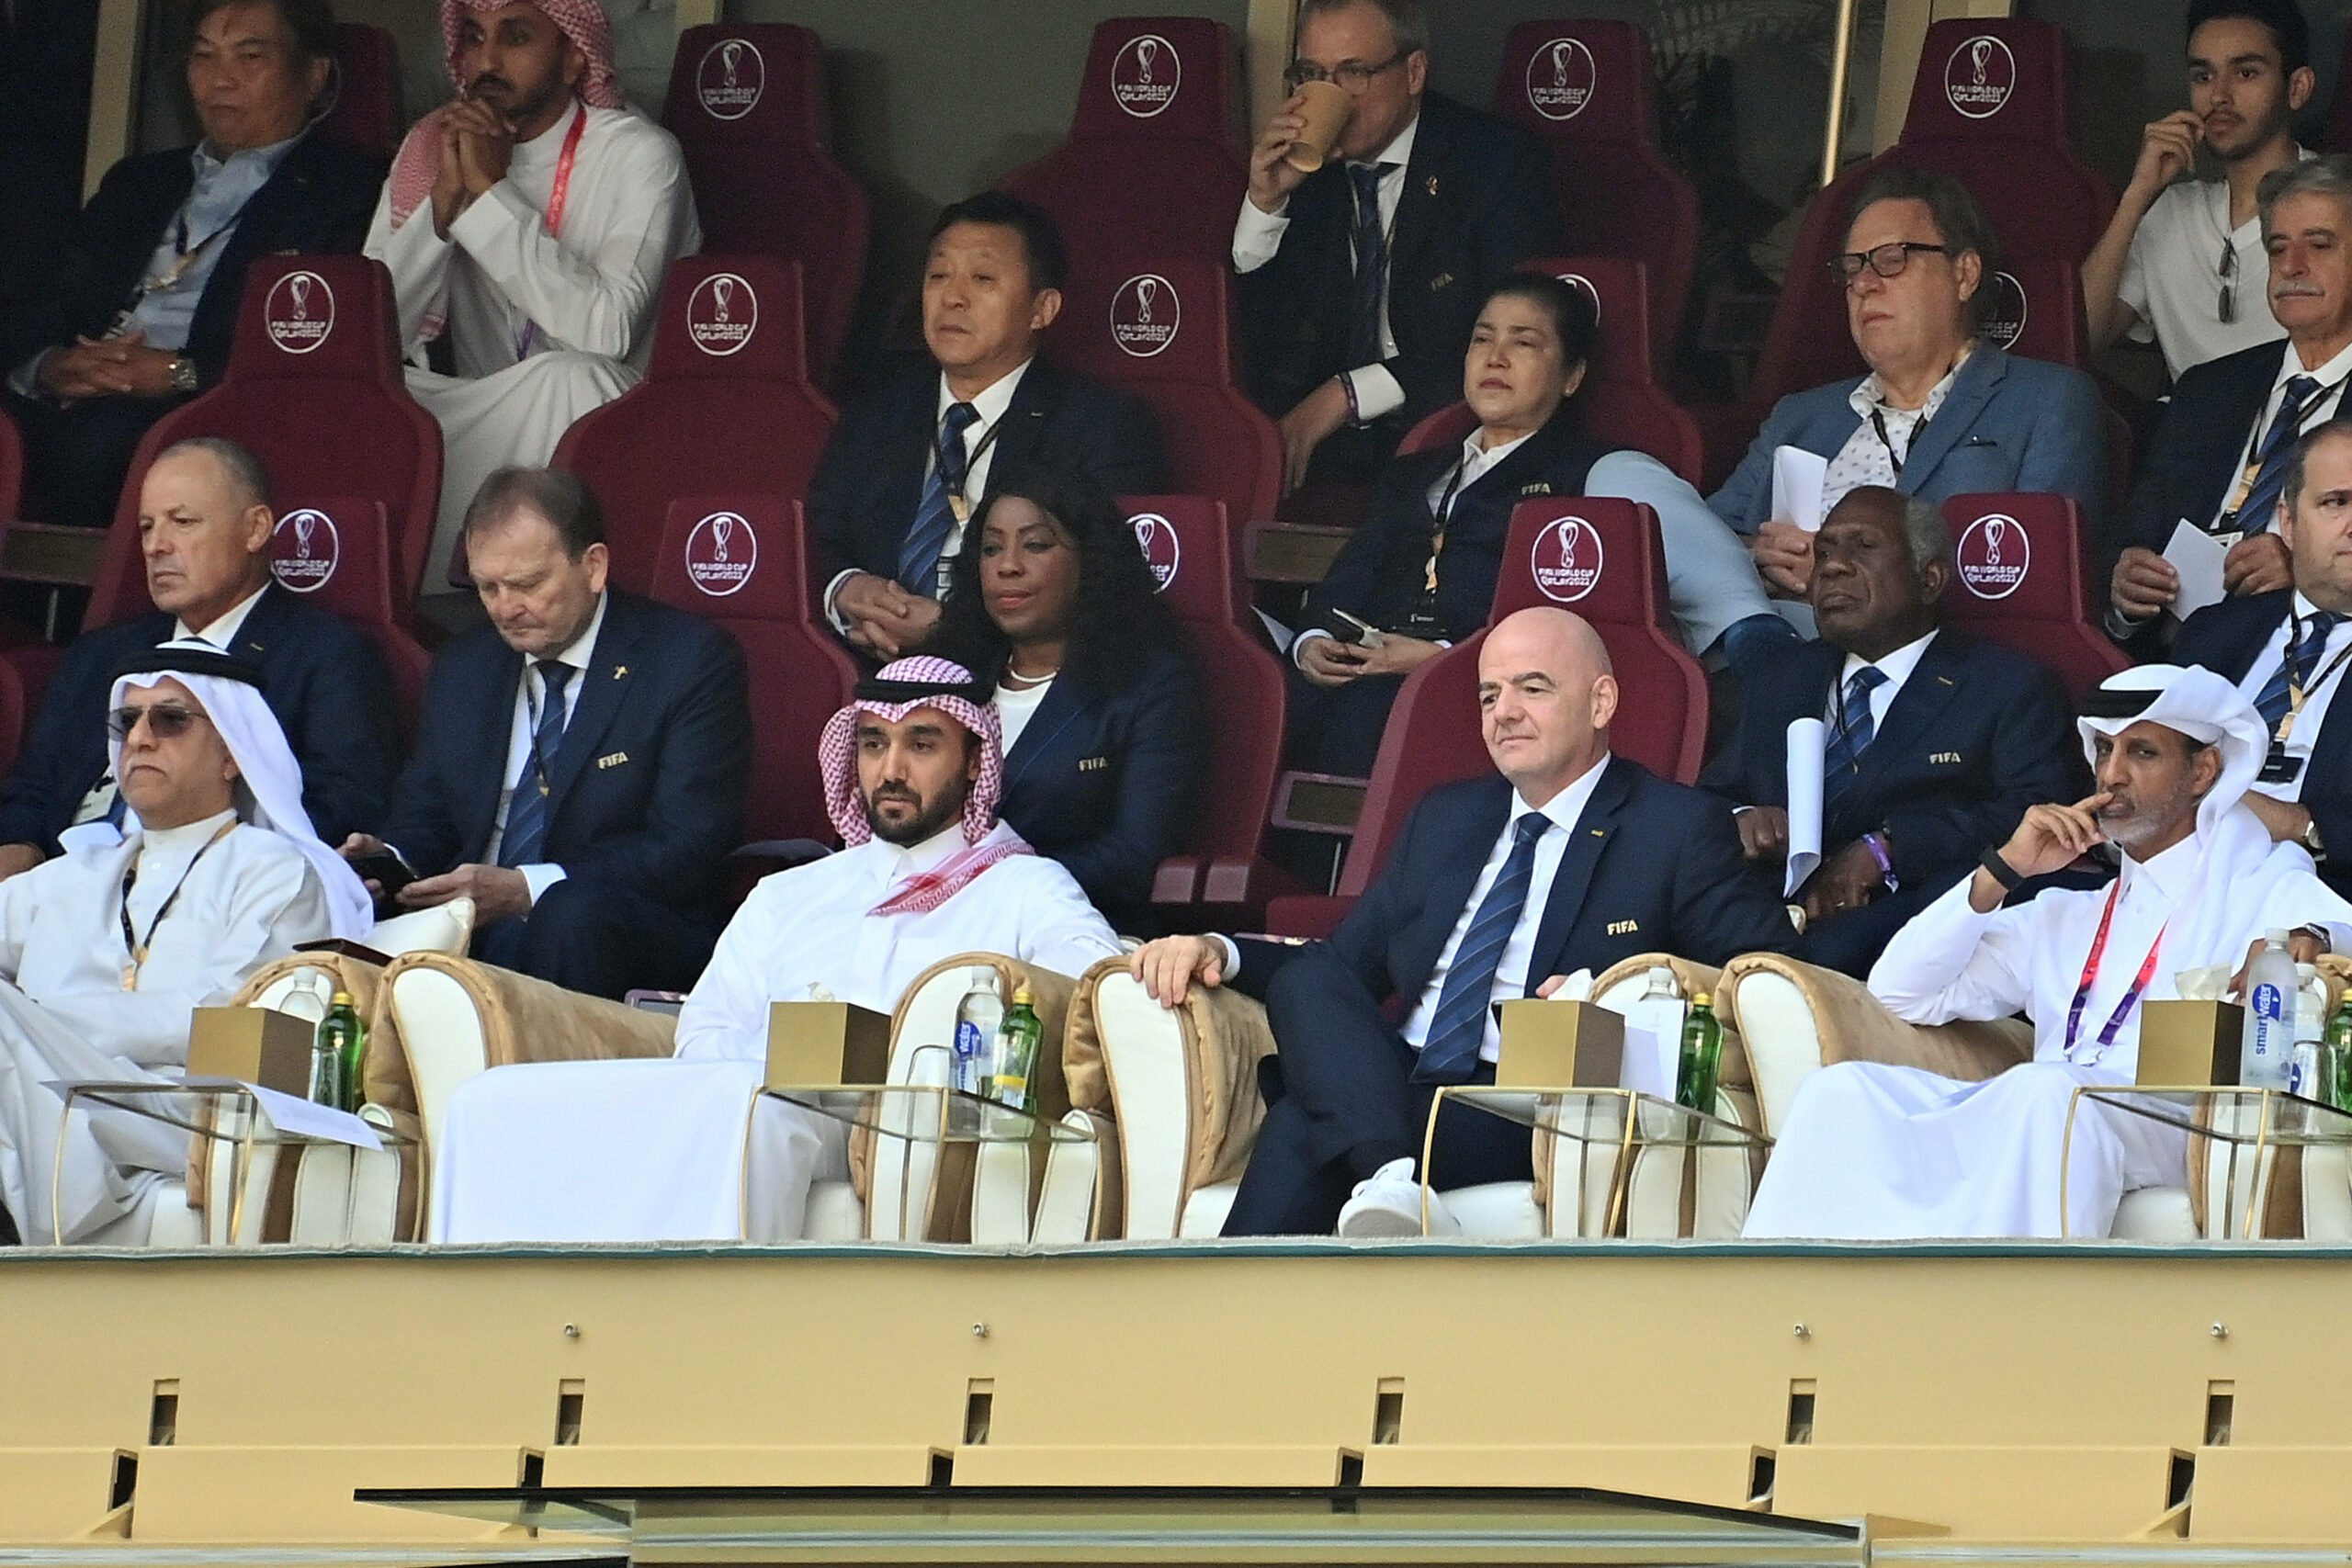 Infantino sitzt neben dem Emir von Katar im Publikum.